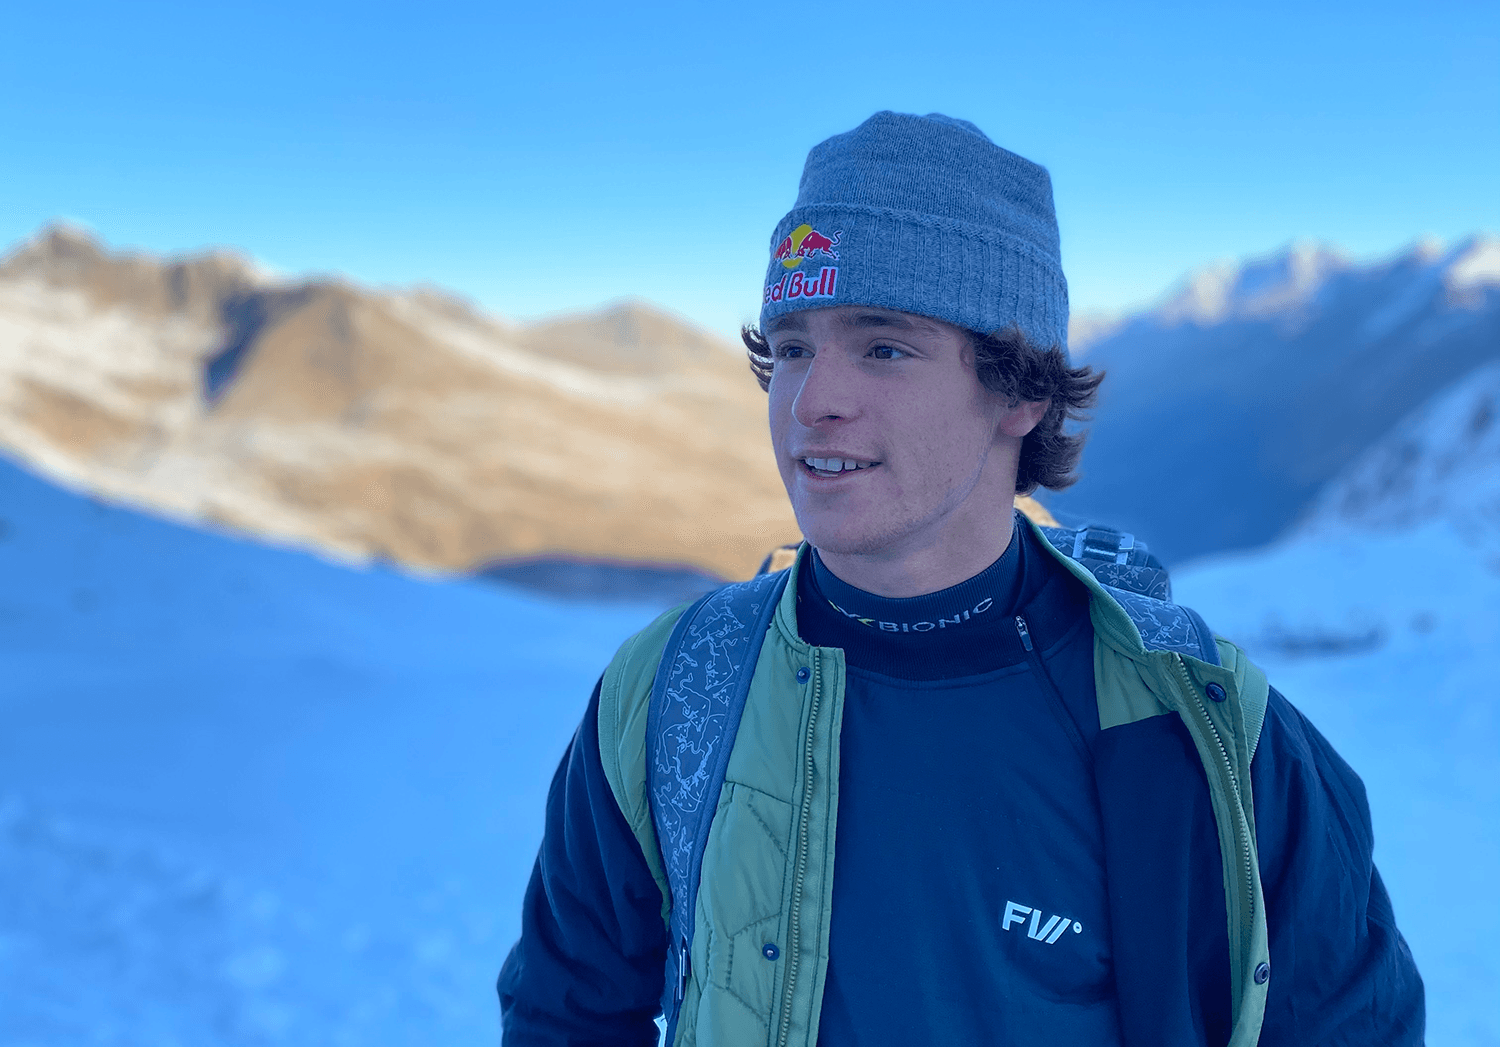 MATEJ SVANCER – Faction Skis US